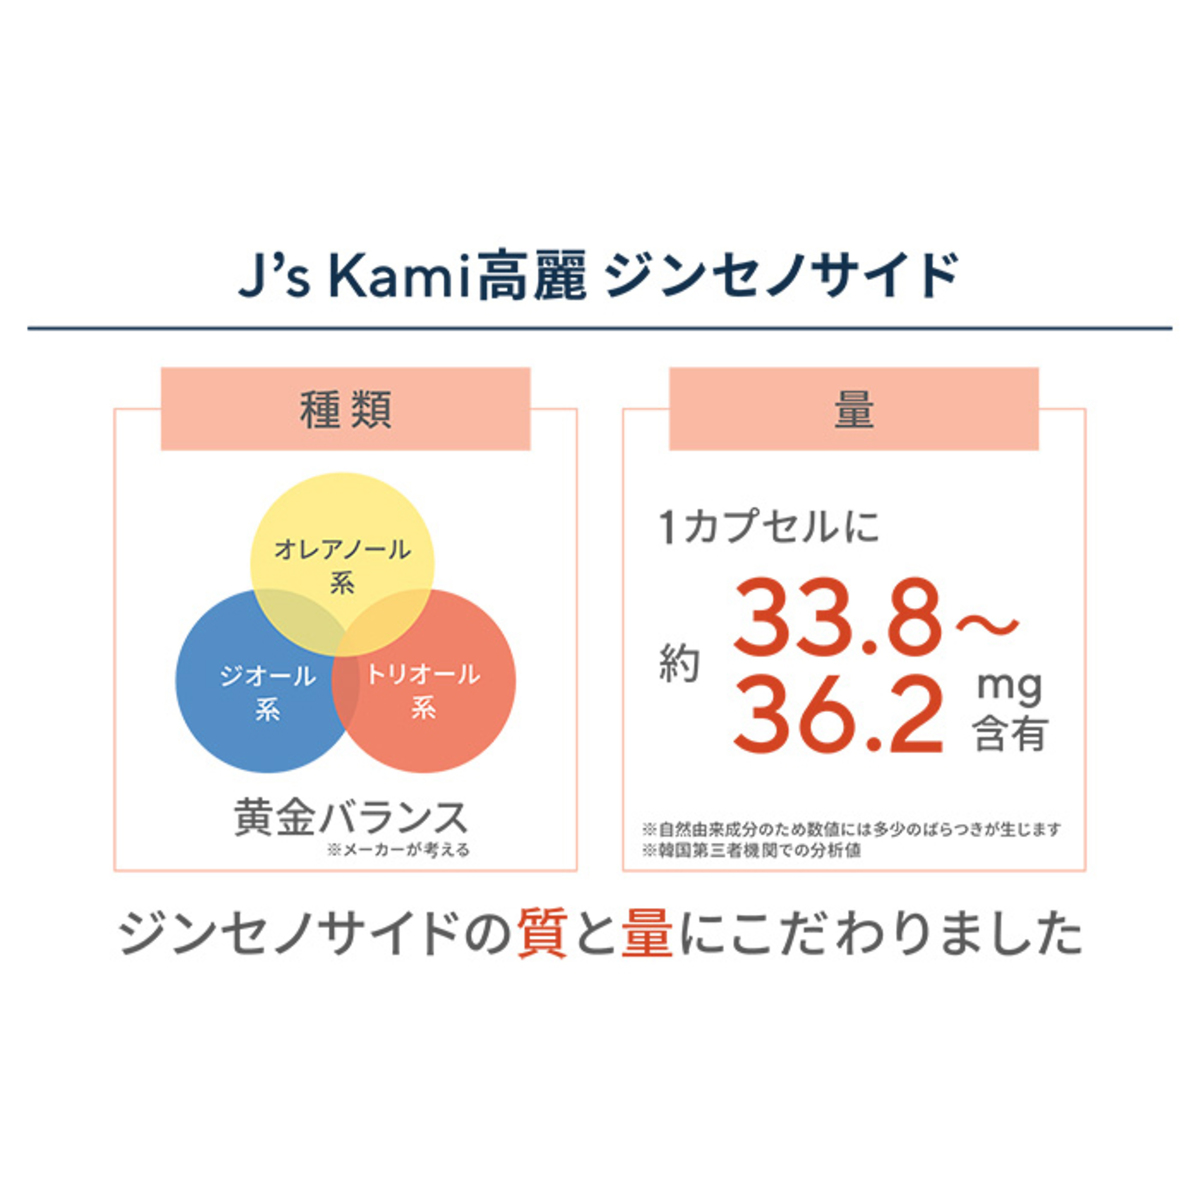 高濃縮紅参サプリメントJ'sKami高麗30粒 - QVC.jp